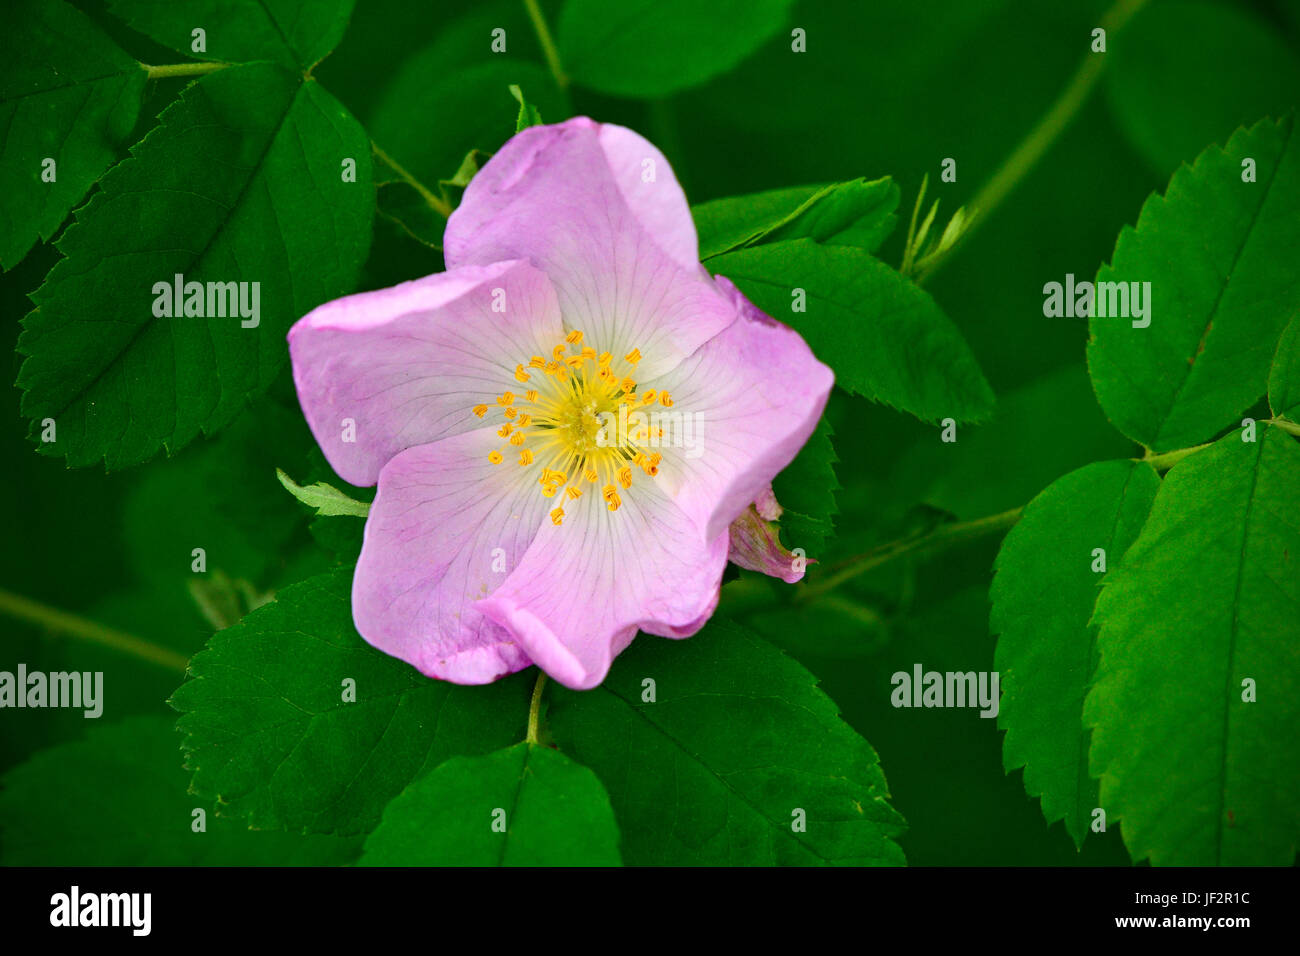 Eine wilde rose Alberta Bush (Rosa Acicularis), die offizielle Blumenemblem von der Provinz Alberta, Kanada. Stockfoto